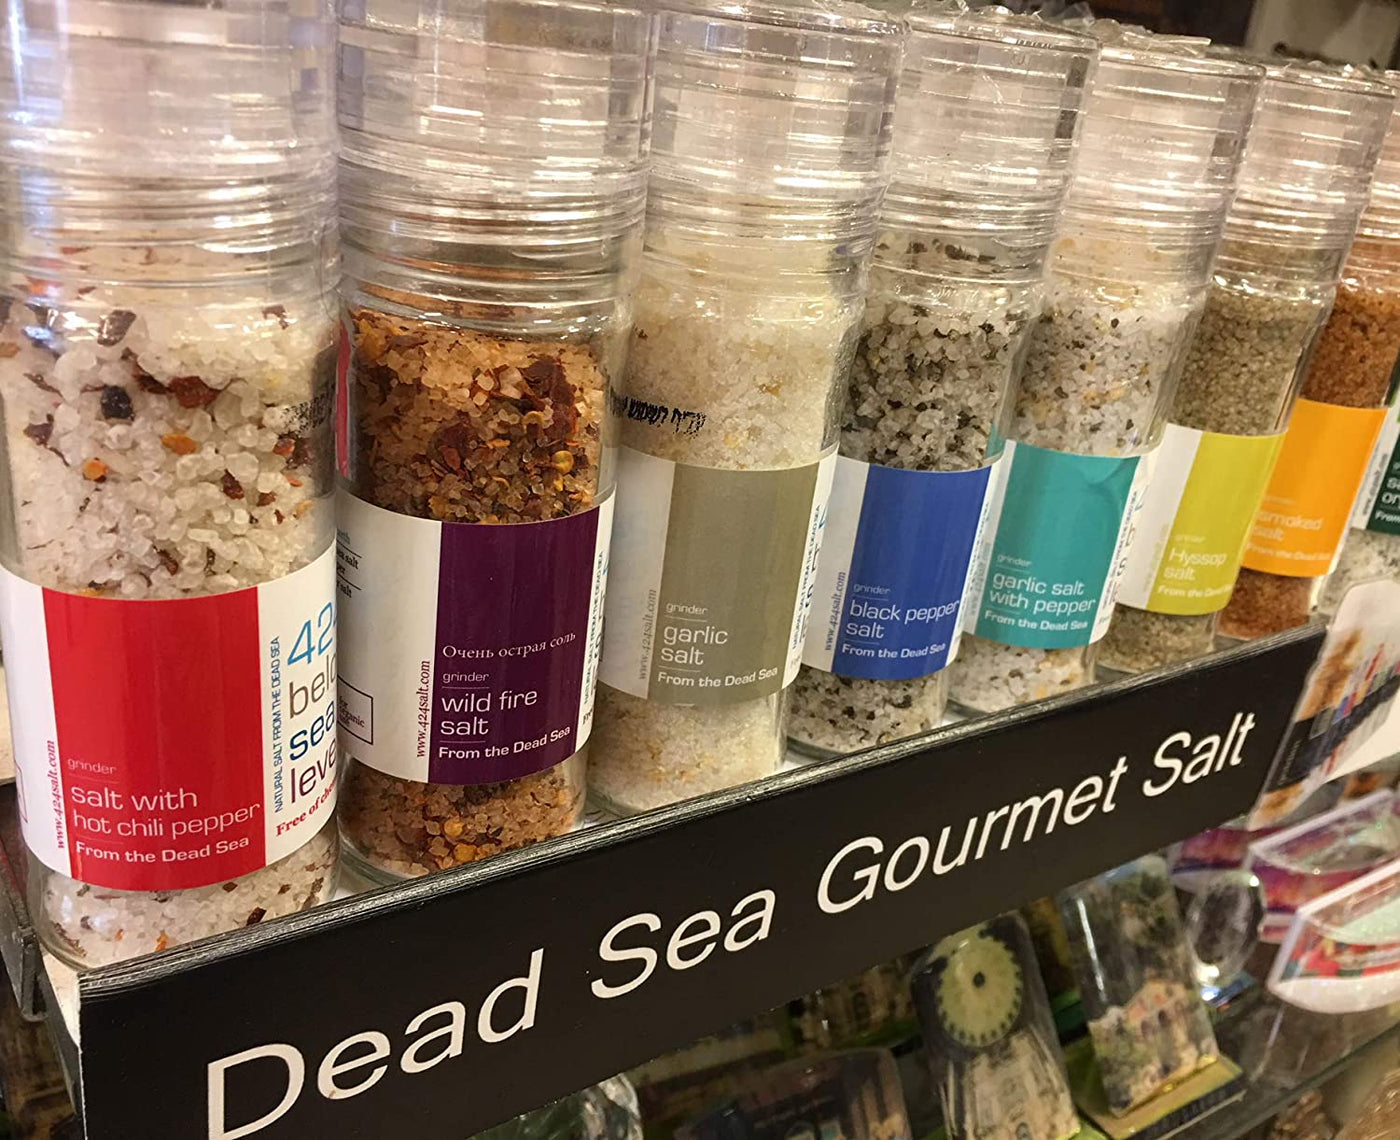 Garlic Salt With Rosemary Gourmet Salt From The Dead Sea 3.87 oz / 110 grams